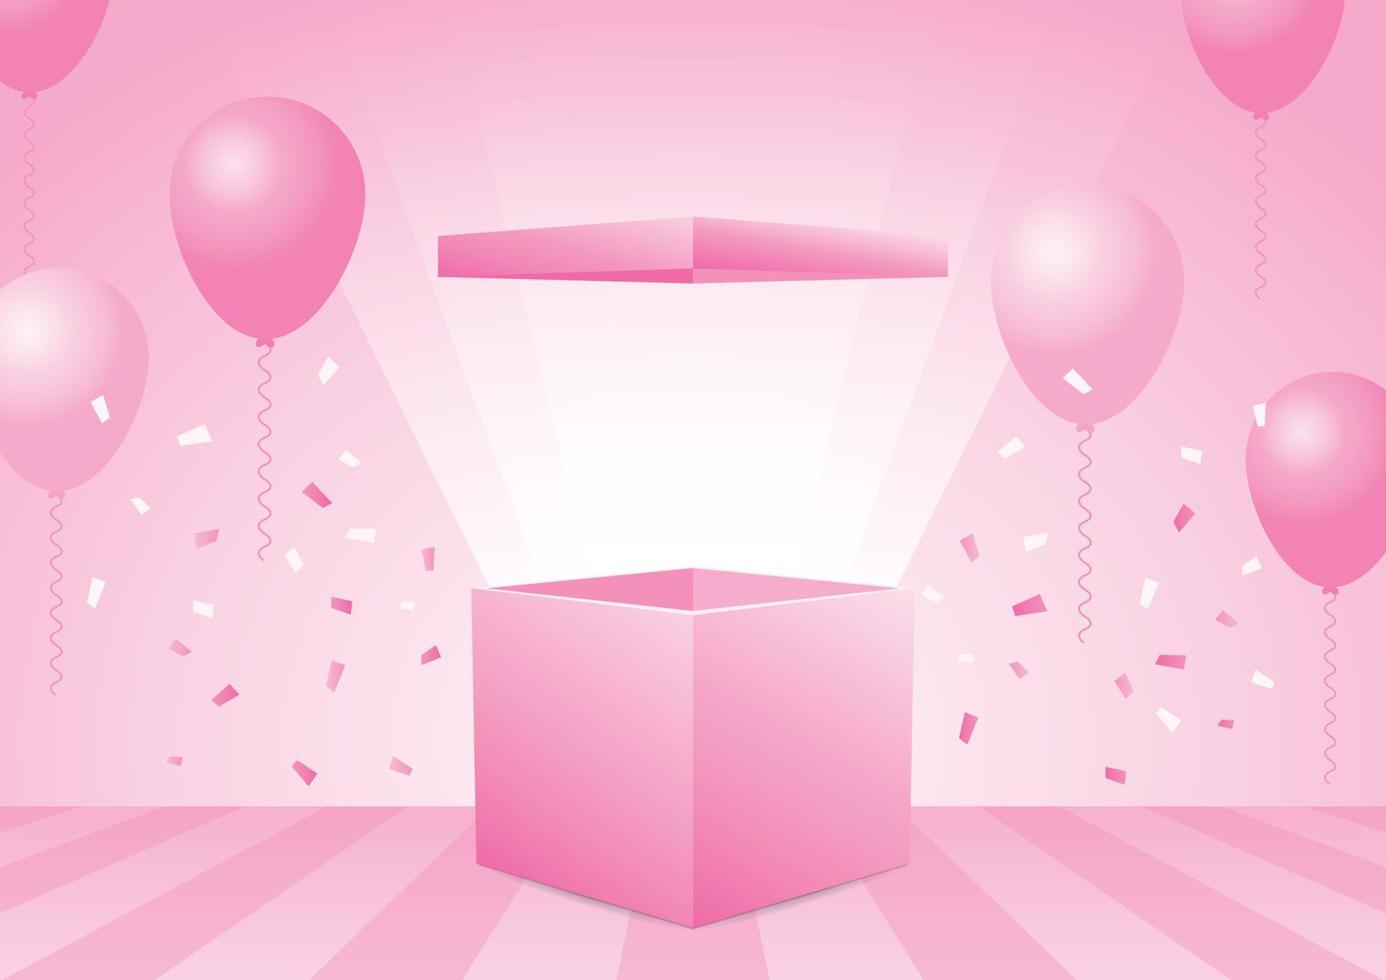 söt pastell rosa öppnad låda 3d illustration vektor med ballonger grafiskt element